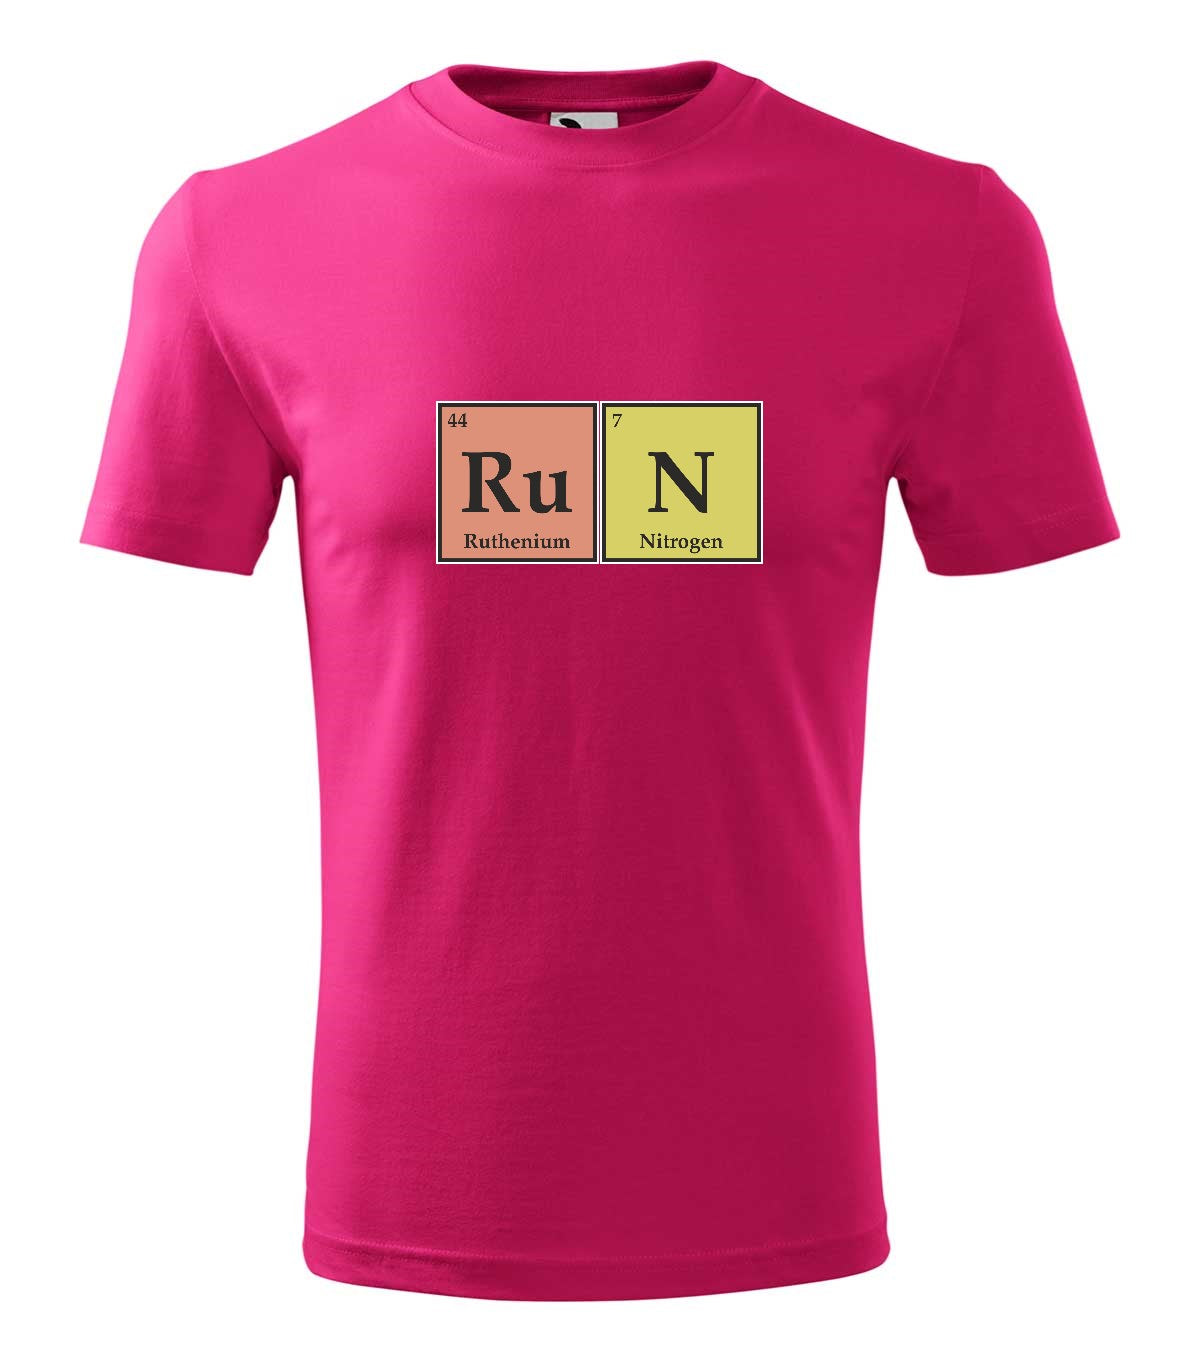 RuN kémia gyerek technikai póló